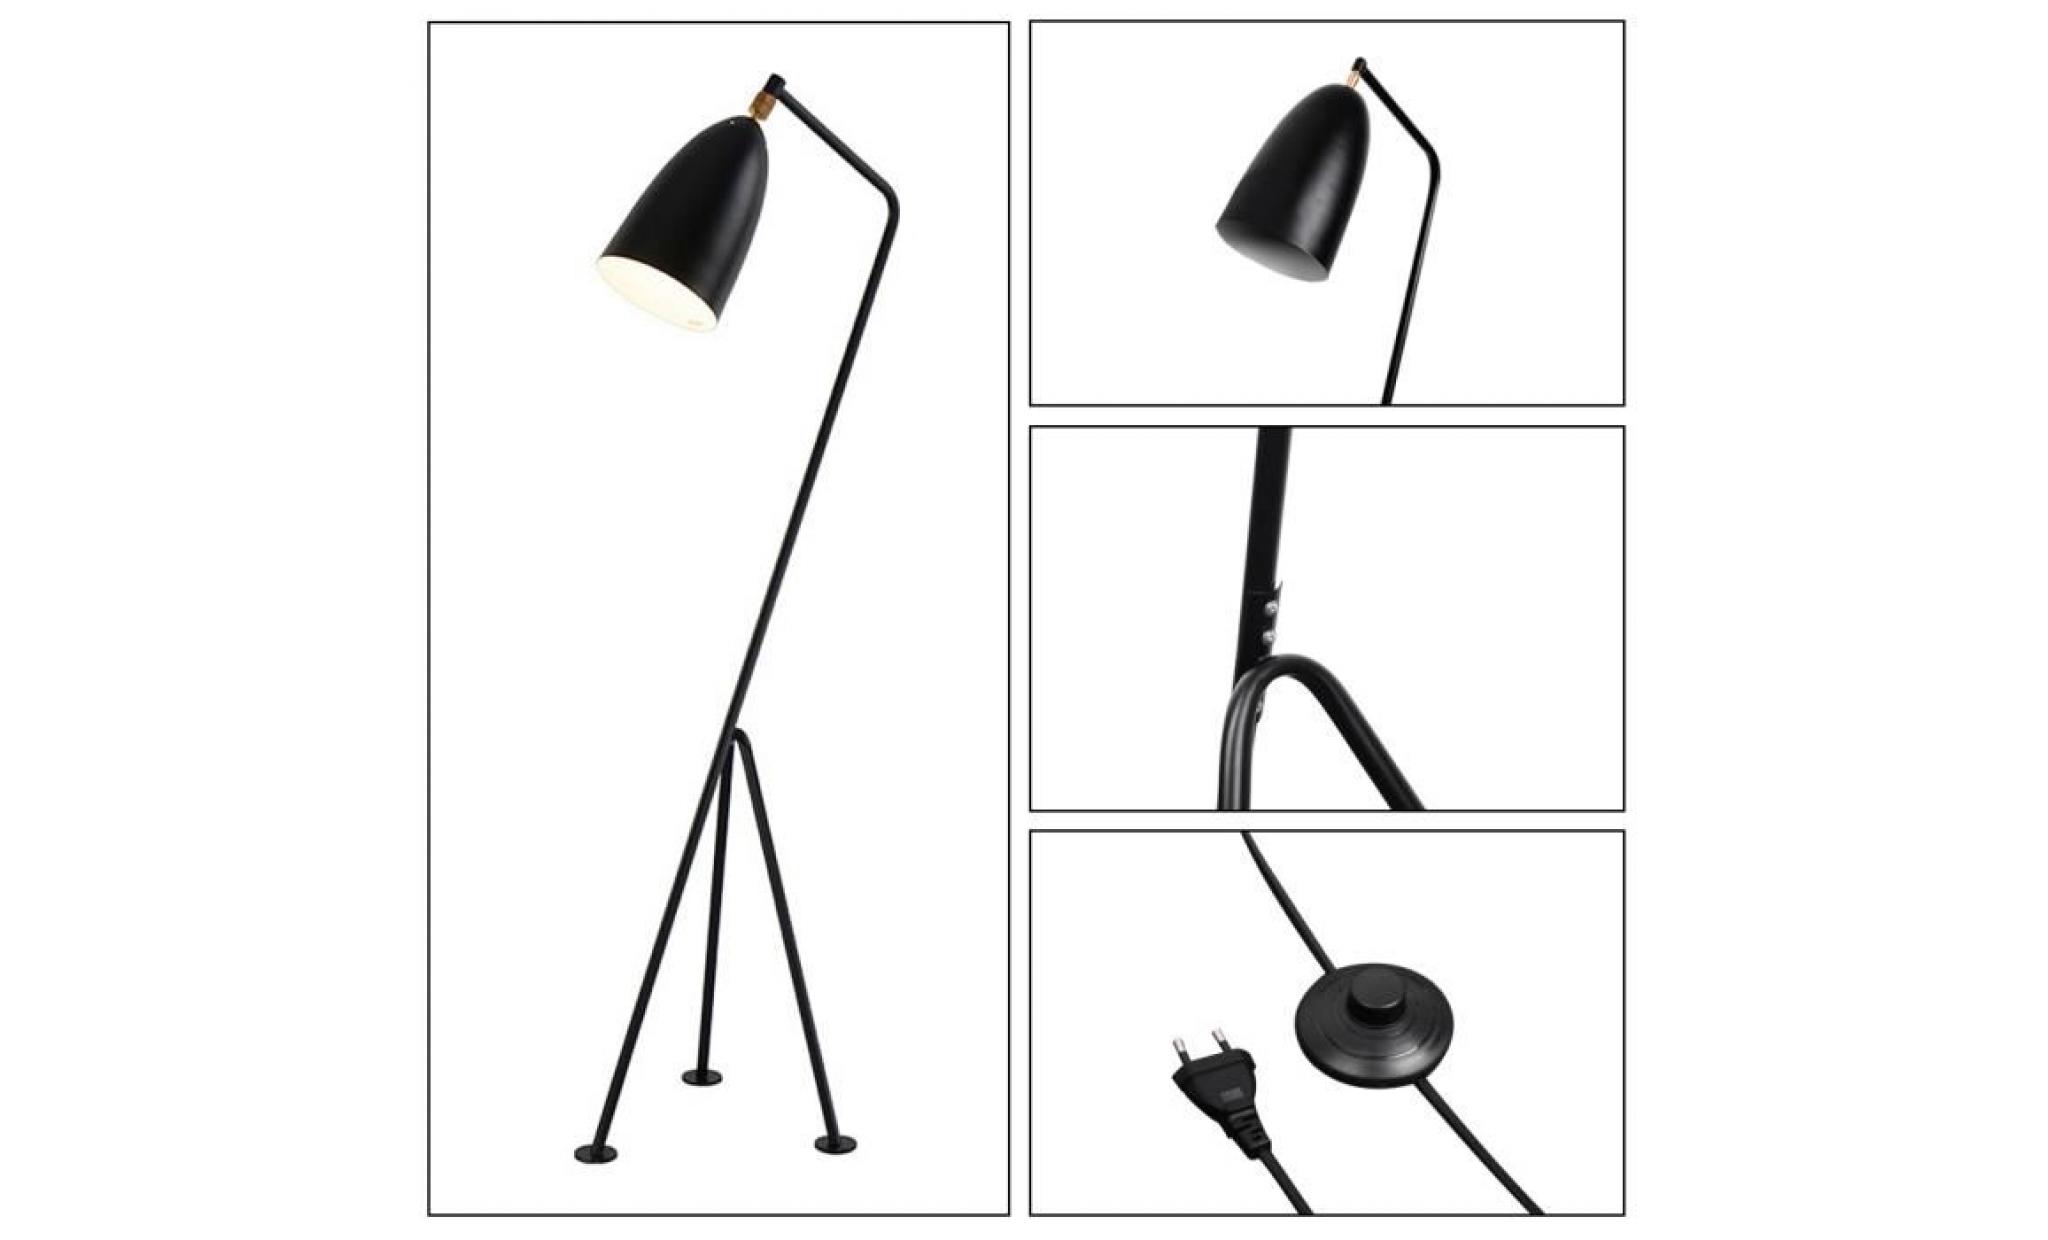 elinkume lampadaires trépieds e27 moderne design noir fer debout lampe réglable lampe de plancher lampadaire pas cher